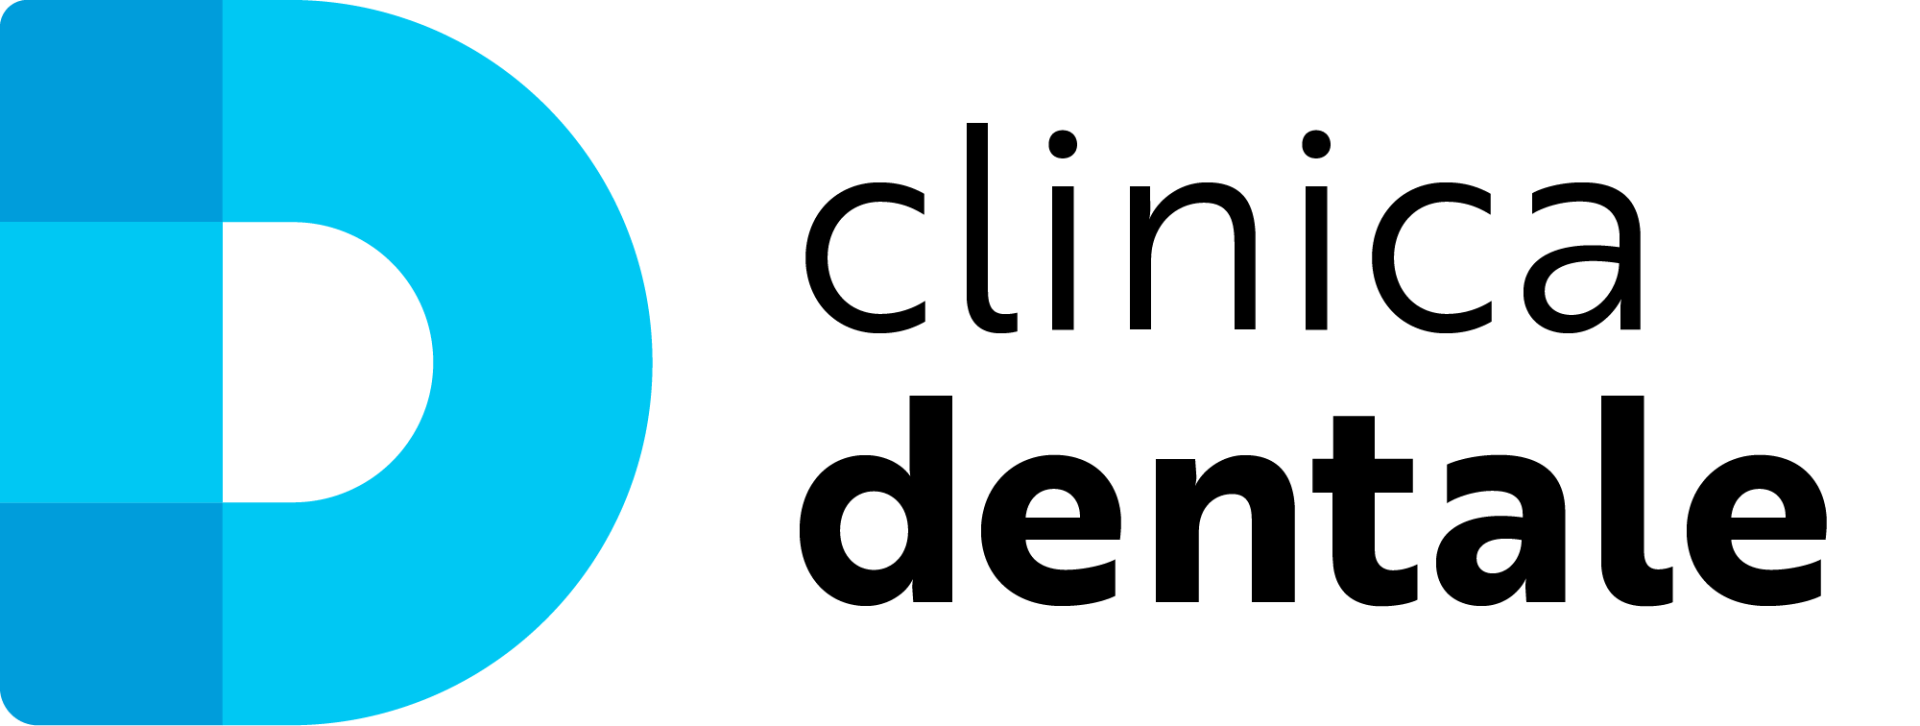 Un logo blu e bianco per la clinica dentale